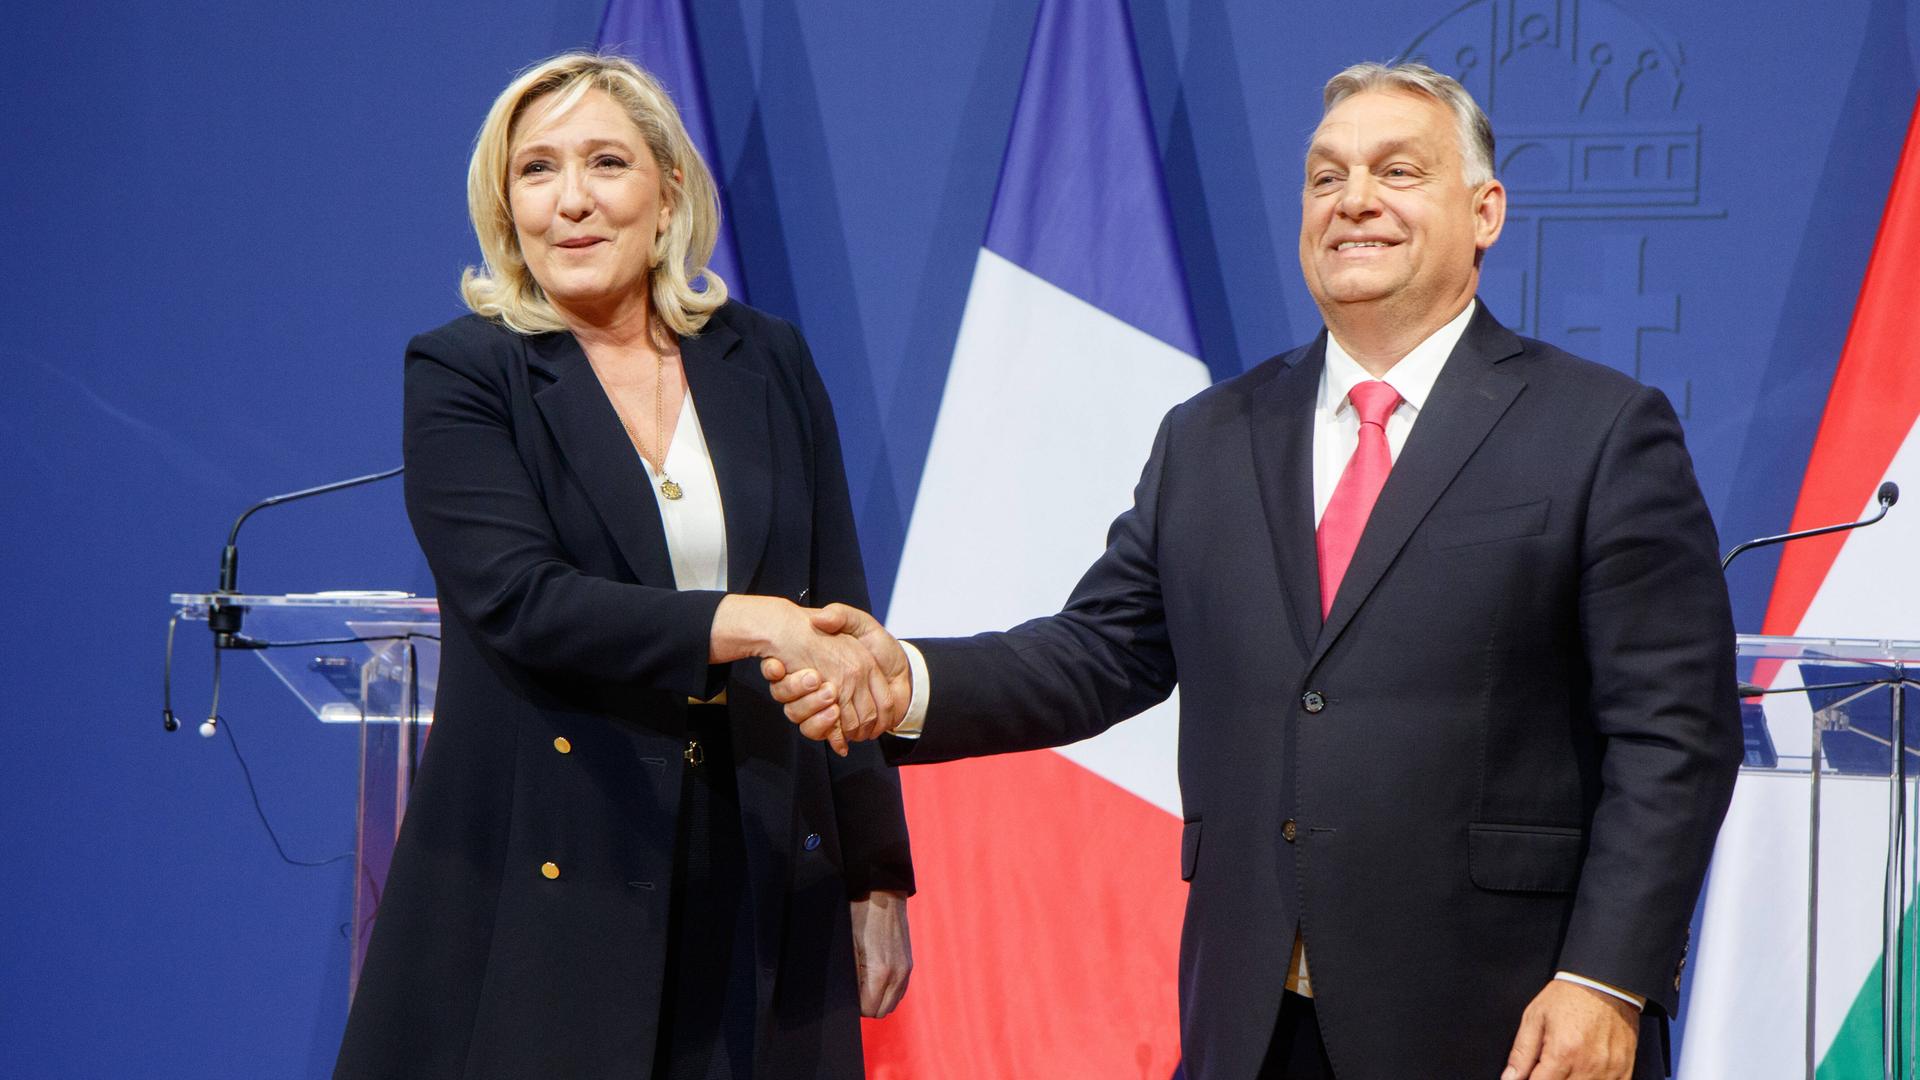 Marine Le Pen von rechtsextremen französischen Partei Rassemblement National besucht 2021 den ungarischen Regierunfgschef Viktor Orban